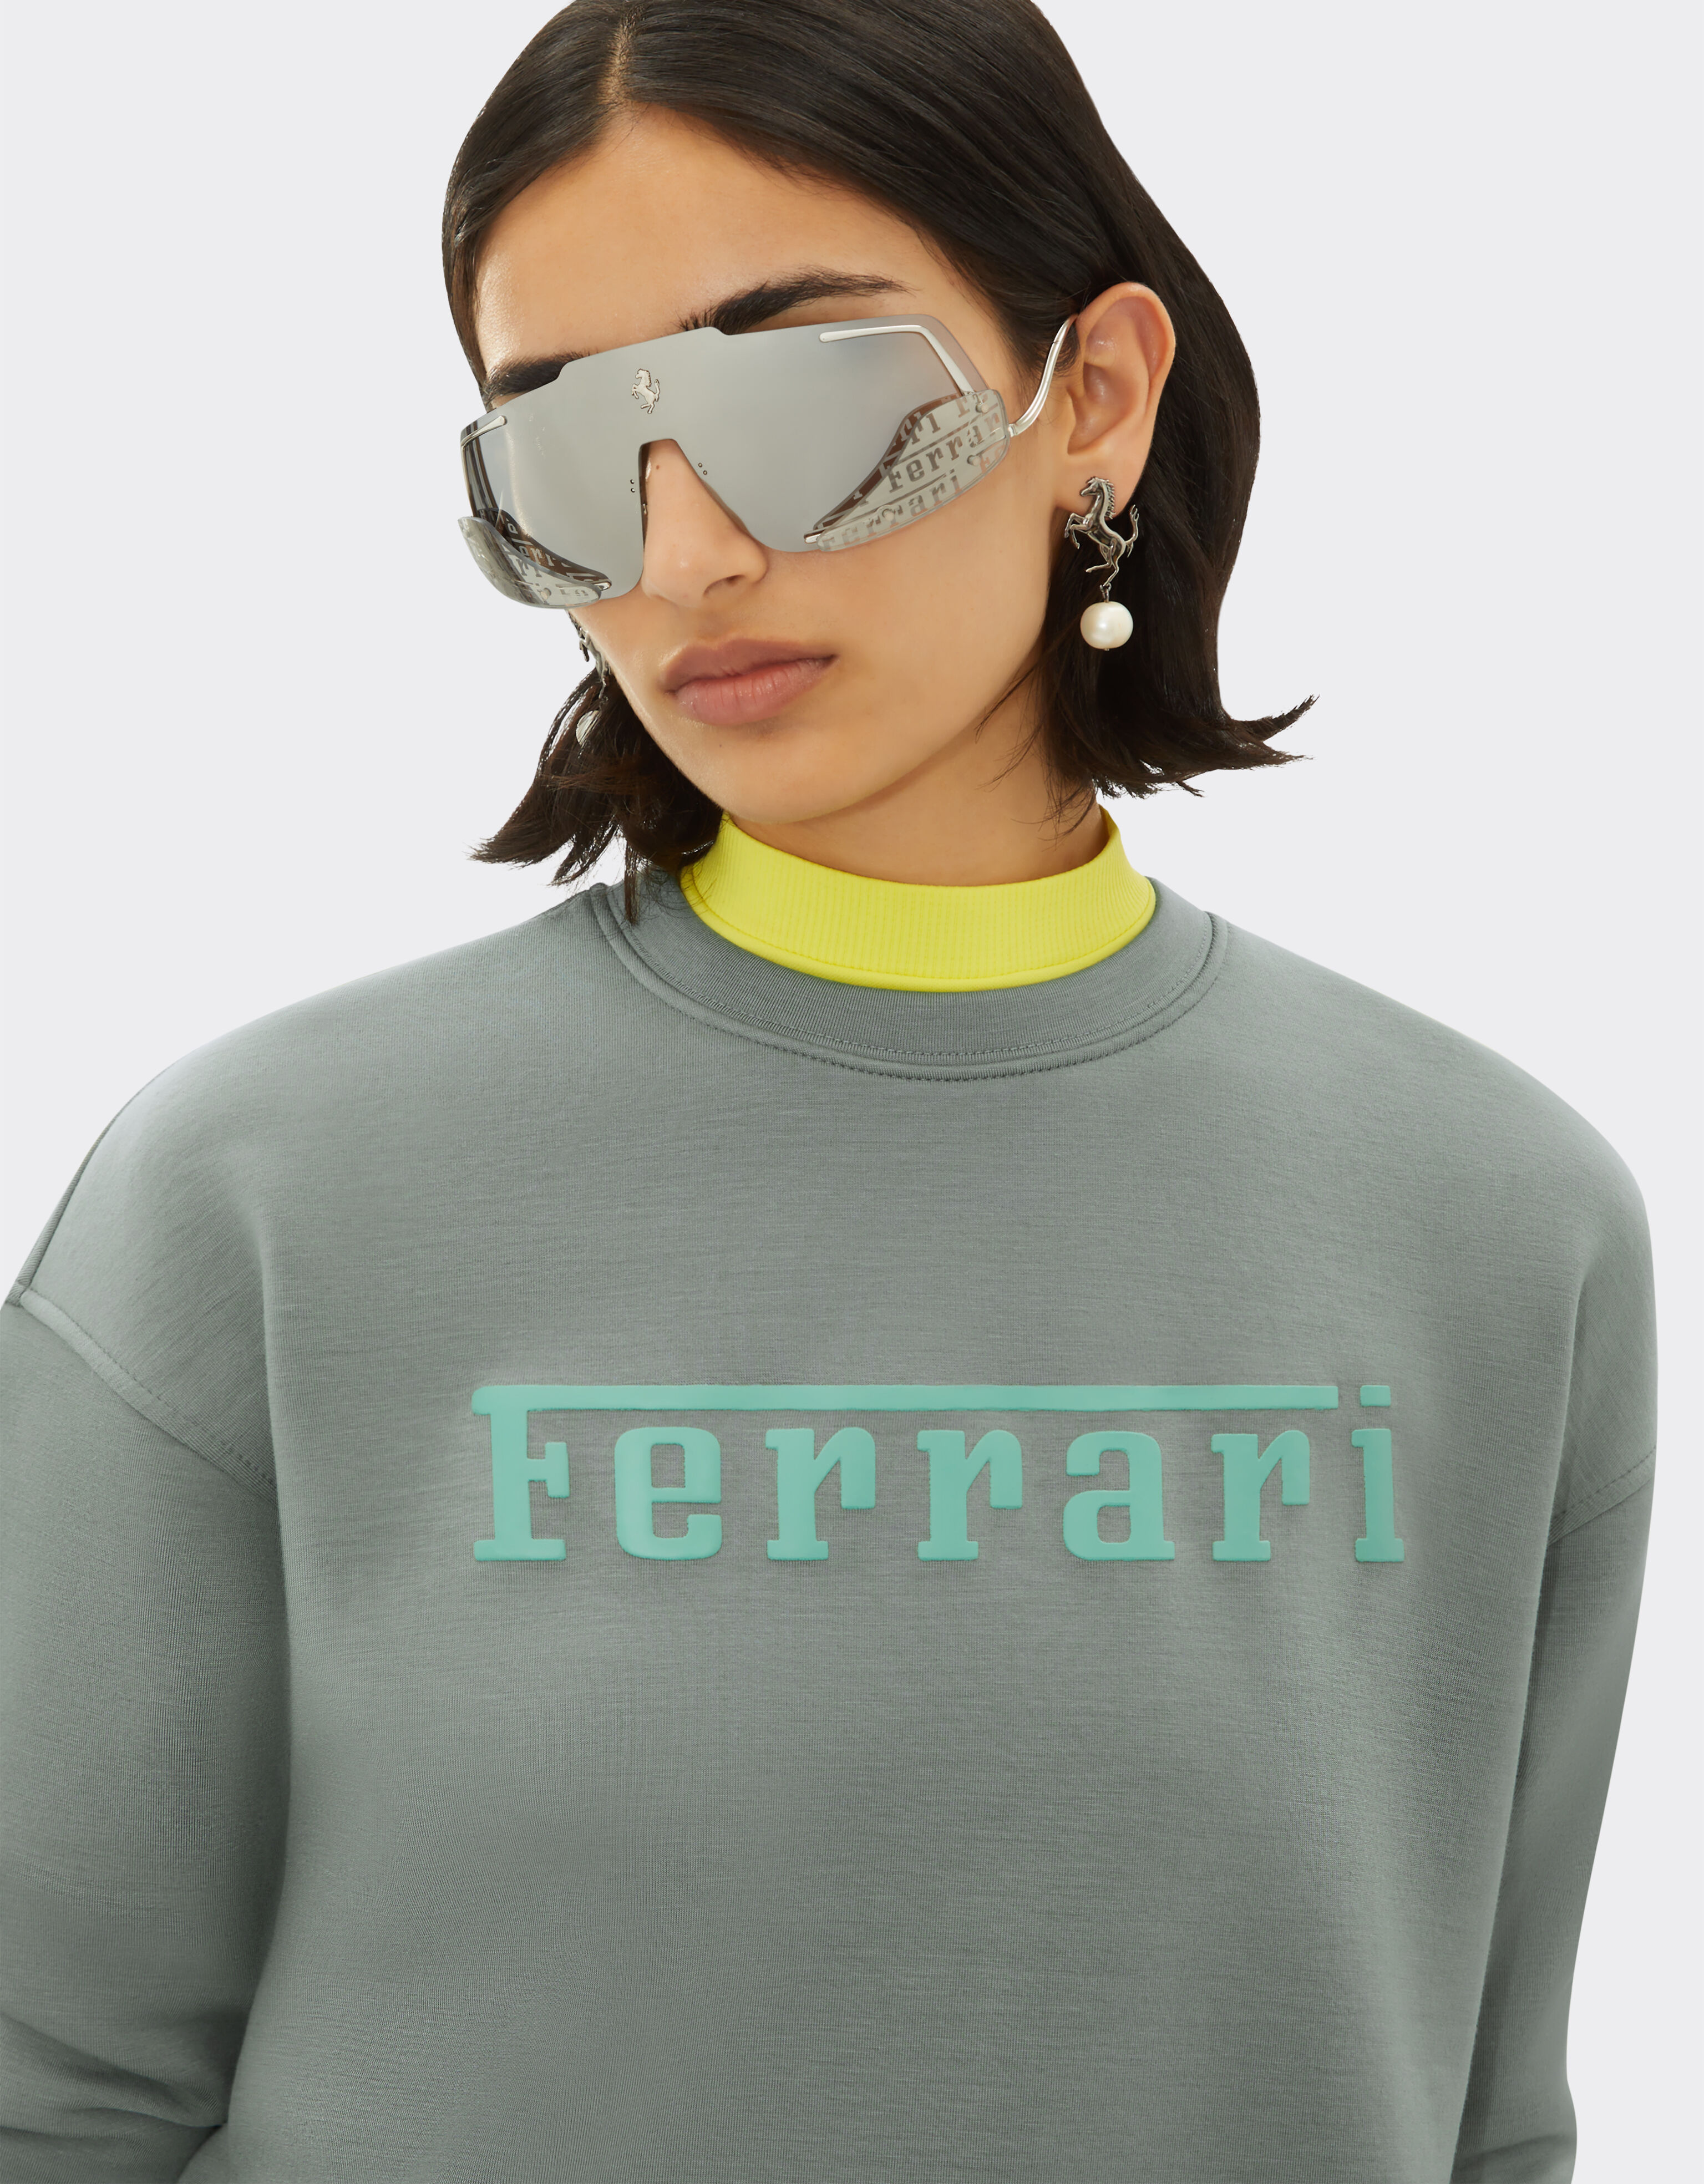 Ferrari Scuba jersey sweatshirt with Ferrari logo print Ingrid 20520f